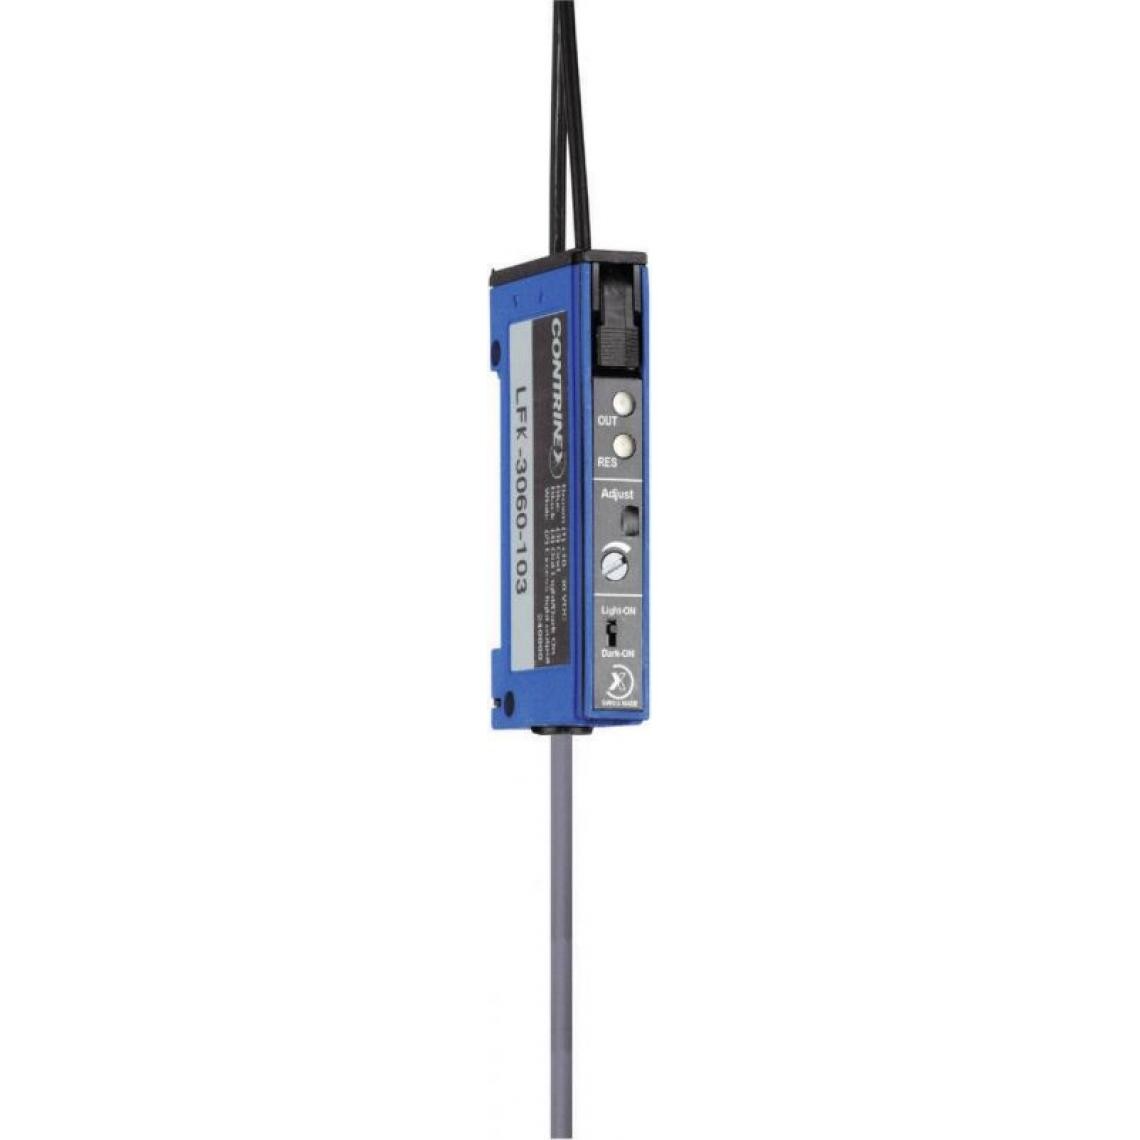 Inconnu - Amplificateur pour fibres optiques Contrinex LFK-3060-103 620 000 913 - Autres équipements modulaires